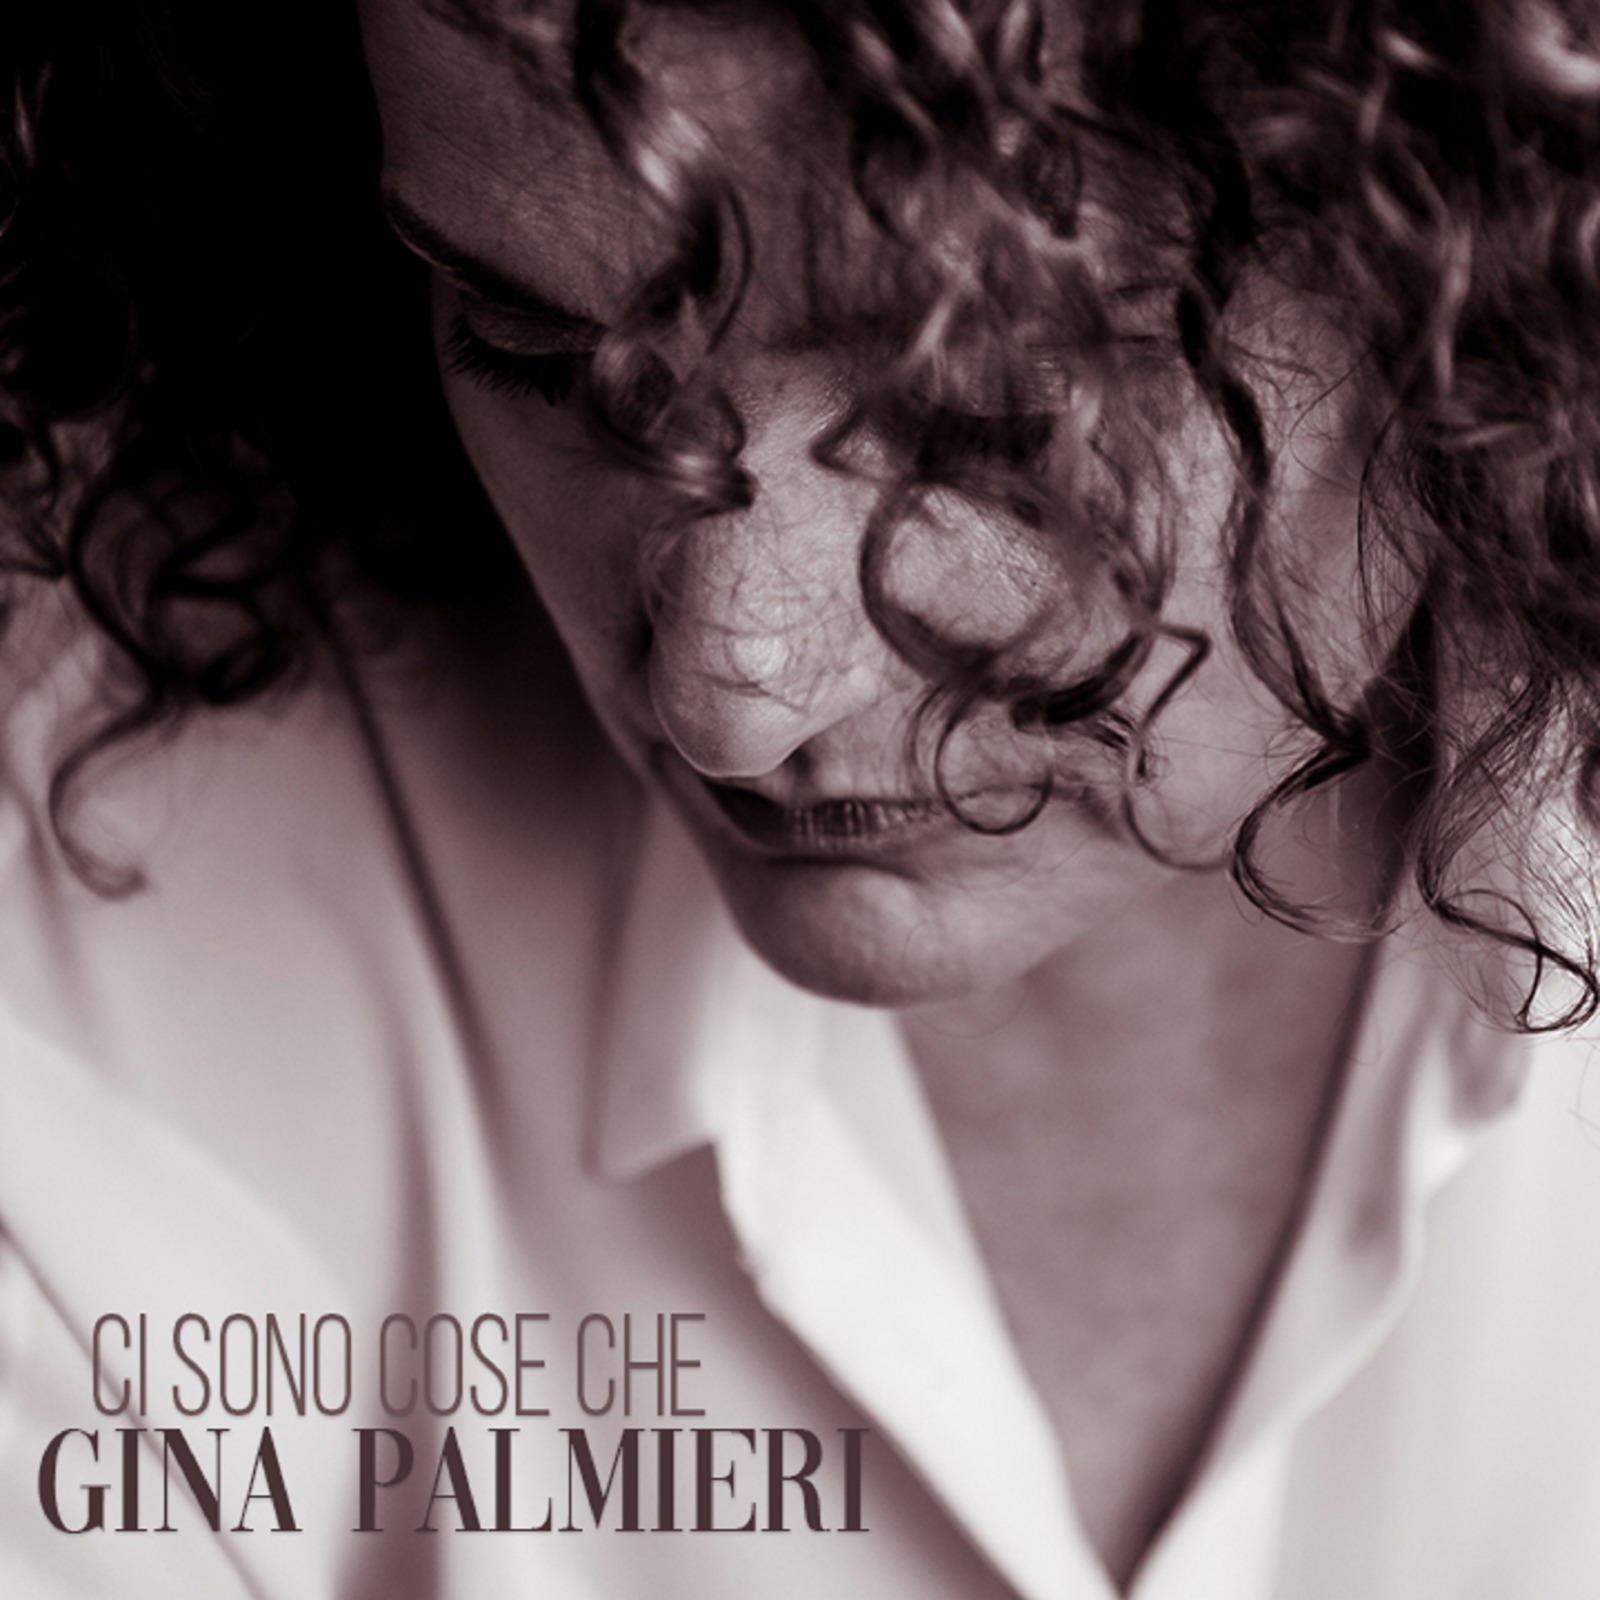 Il 13 Marzo, in tutti i digital stores,  in distribuzione con la SPC Sound, il nuovo singolo dell'artista Gina Palmieri "Ci  sono cose che".